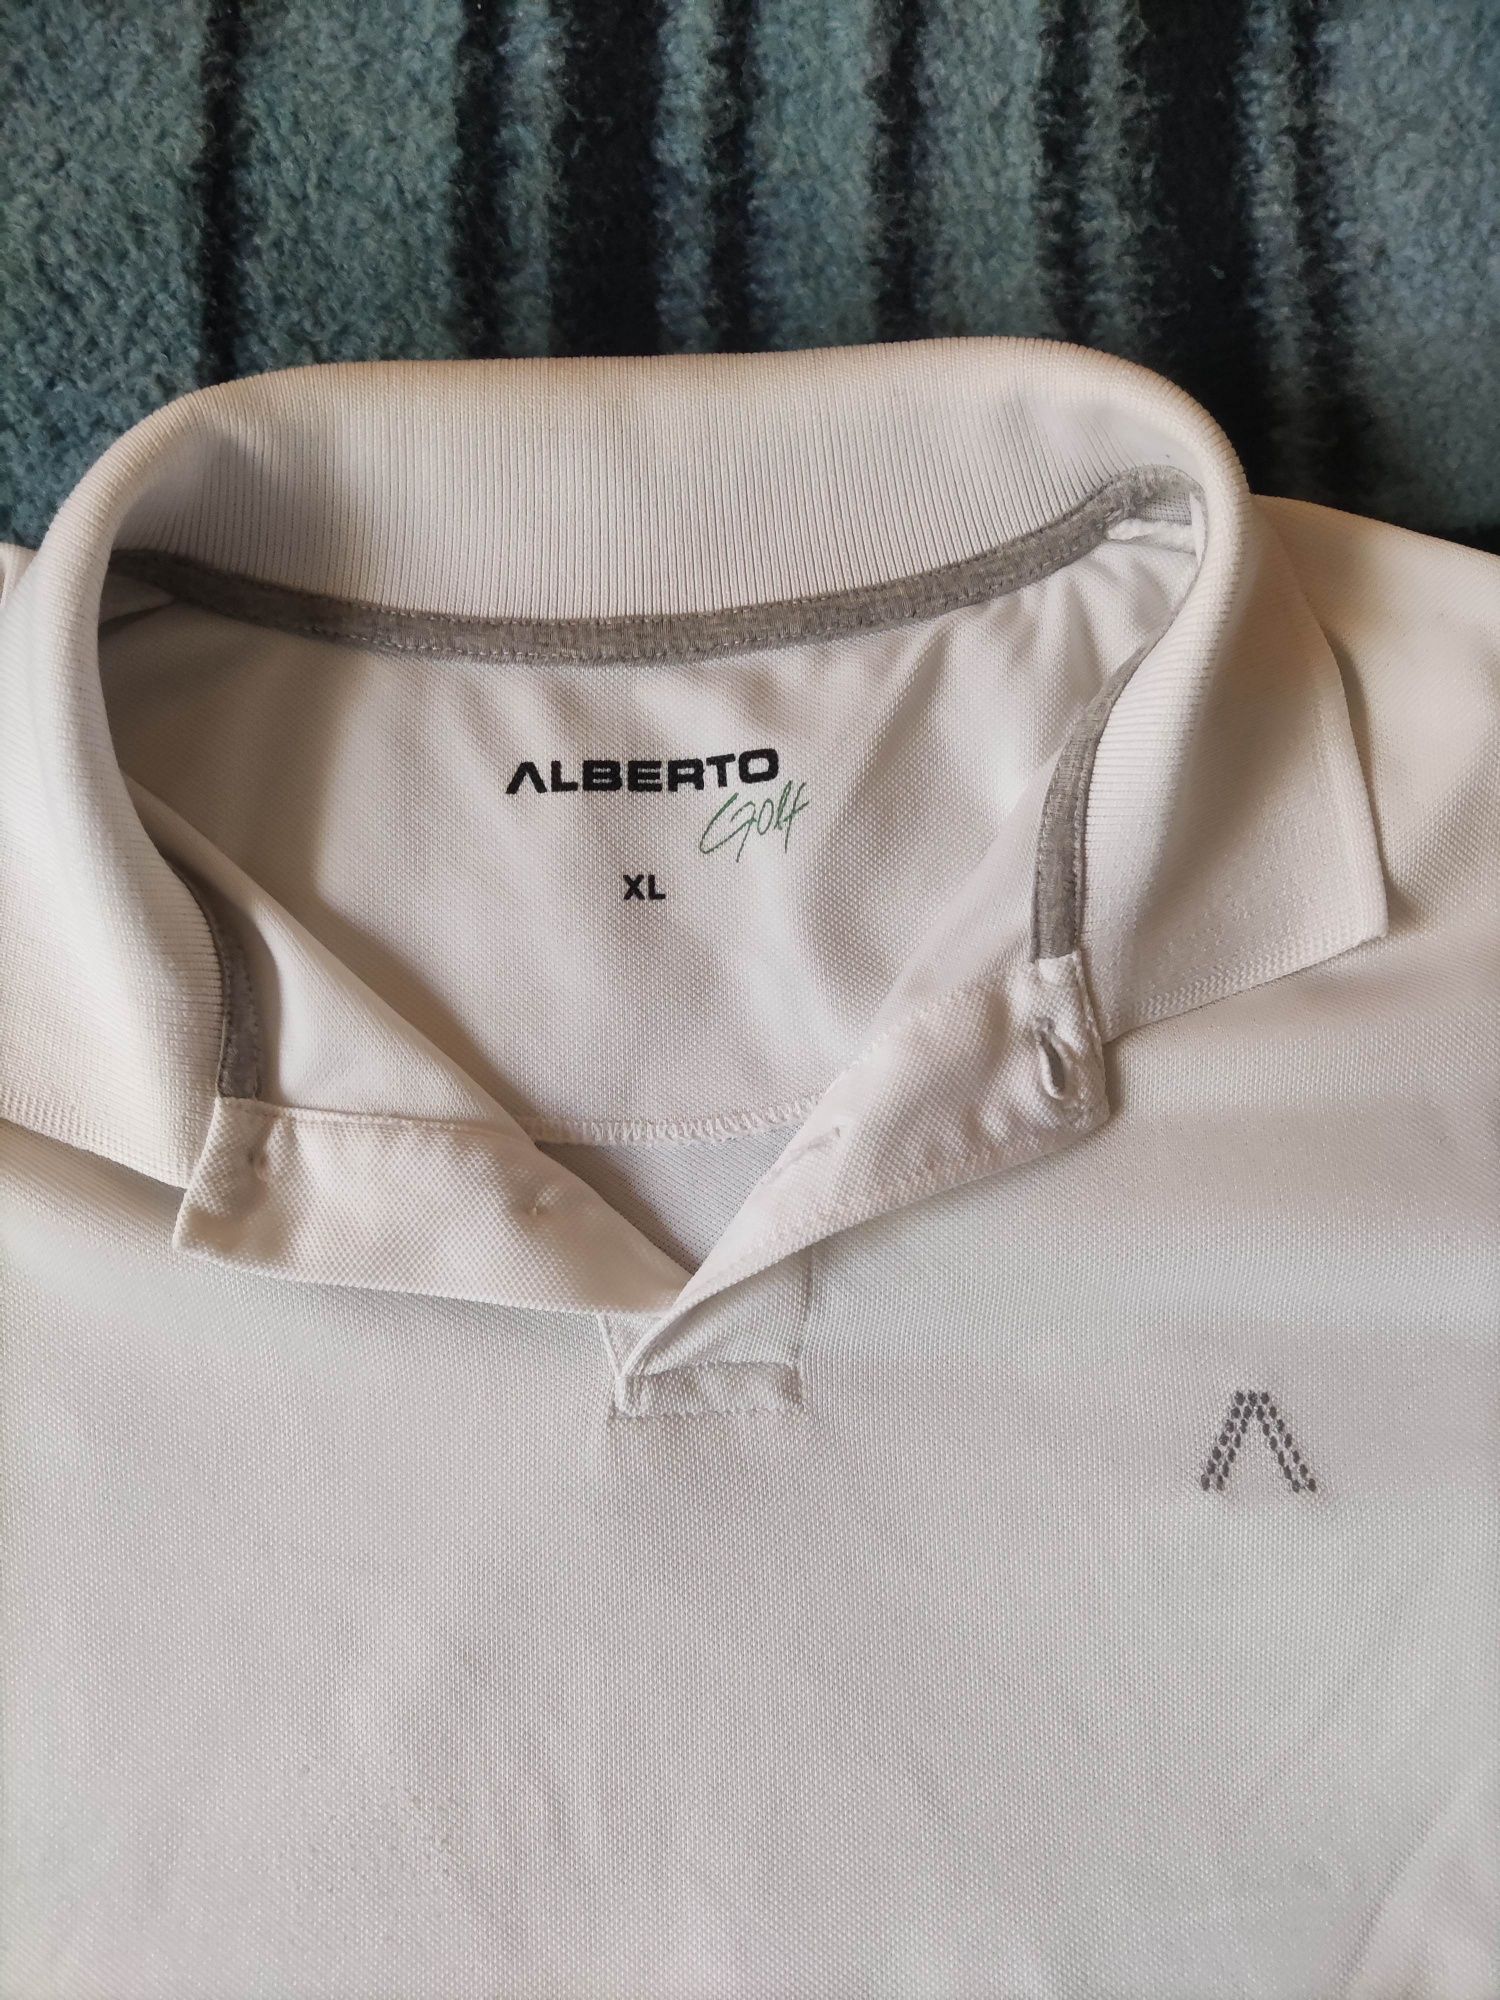 Koszulka Alberto Golf

Rozmiar z metki XL

Stan BDB

Szczegółowe wymia